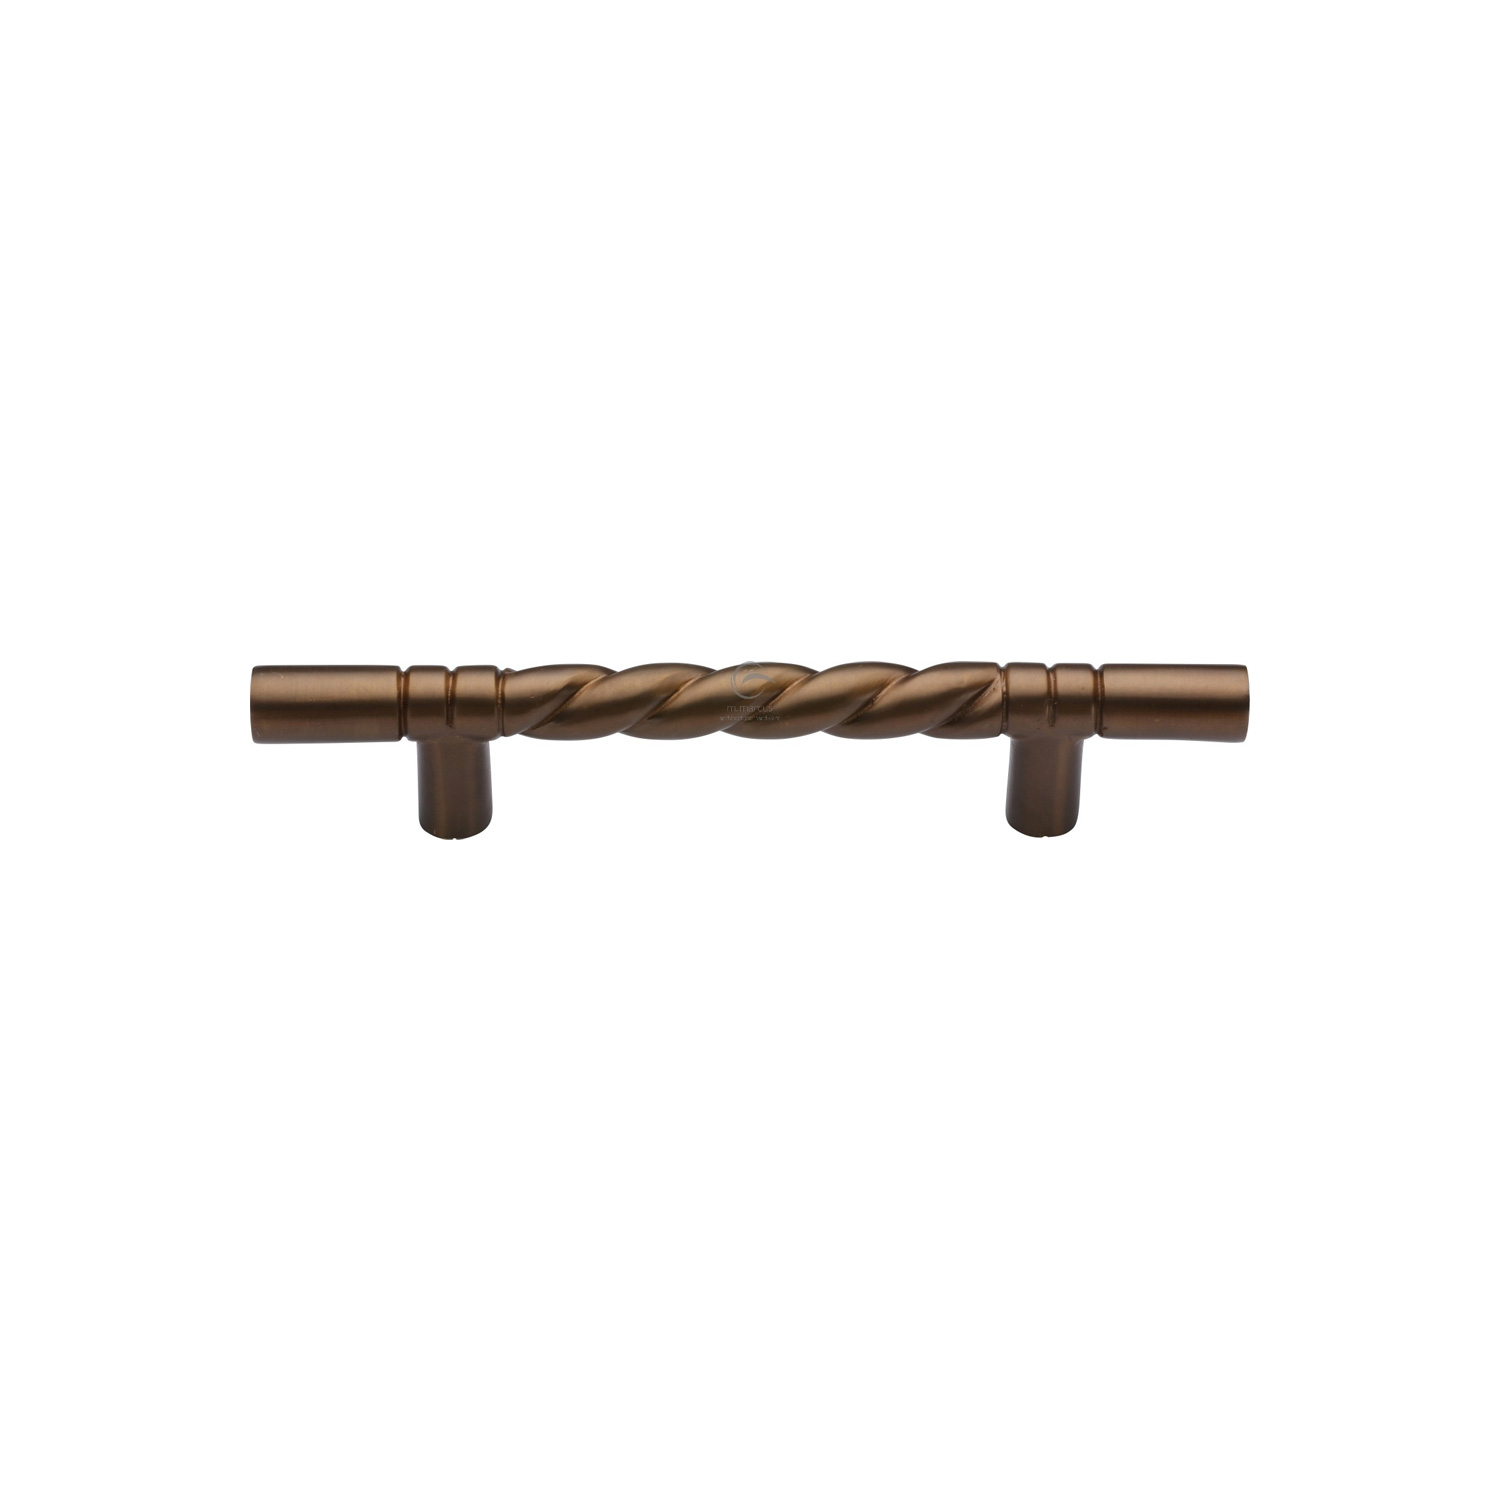 Solid Bronze DOOR Pull Rope Design 305mm